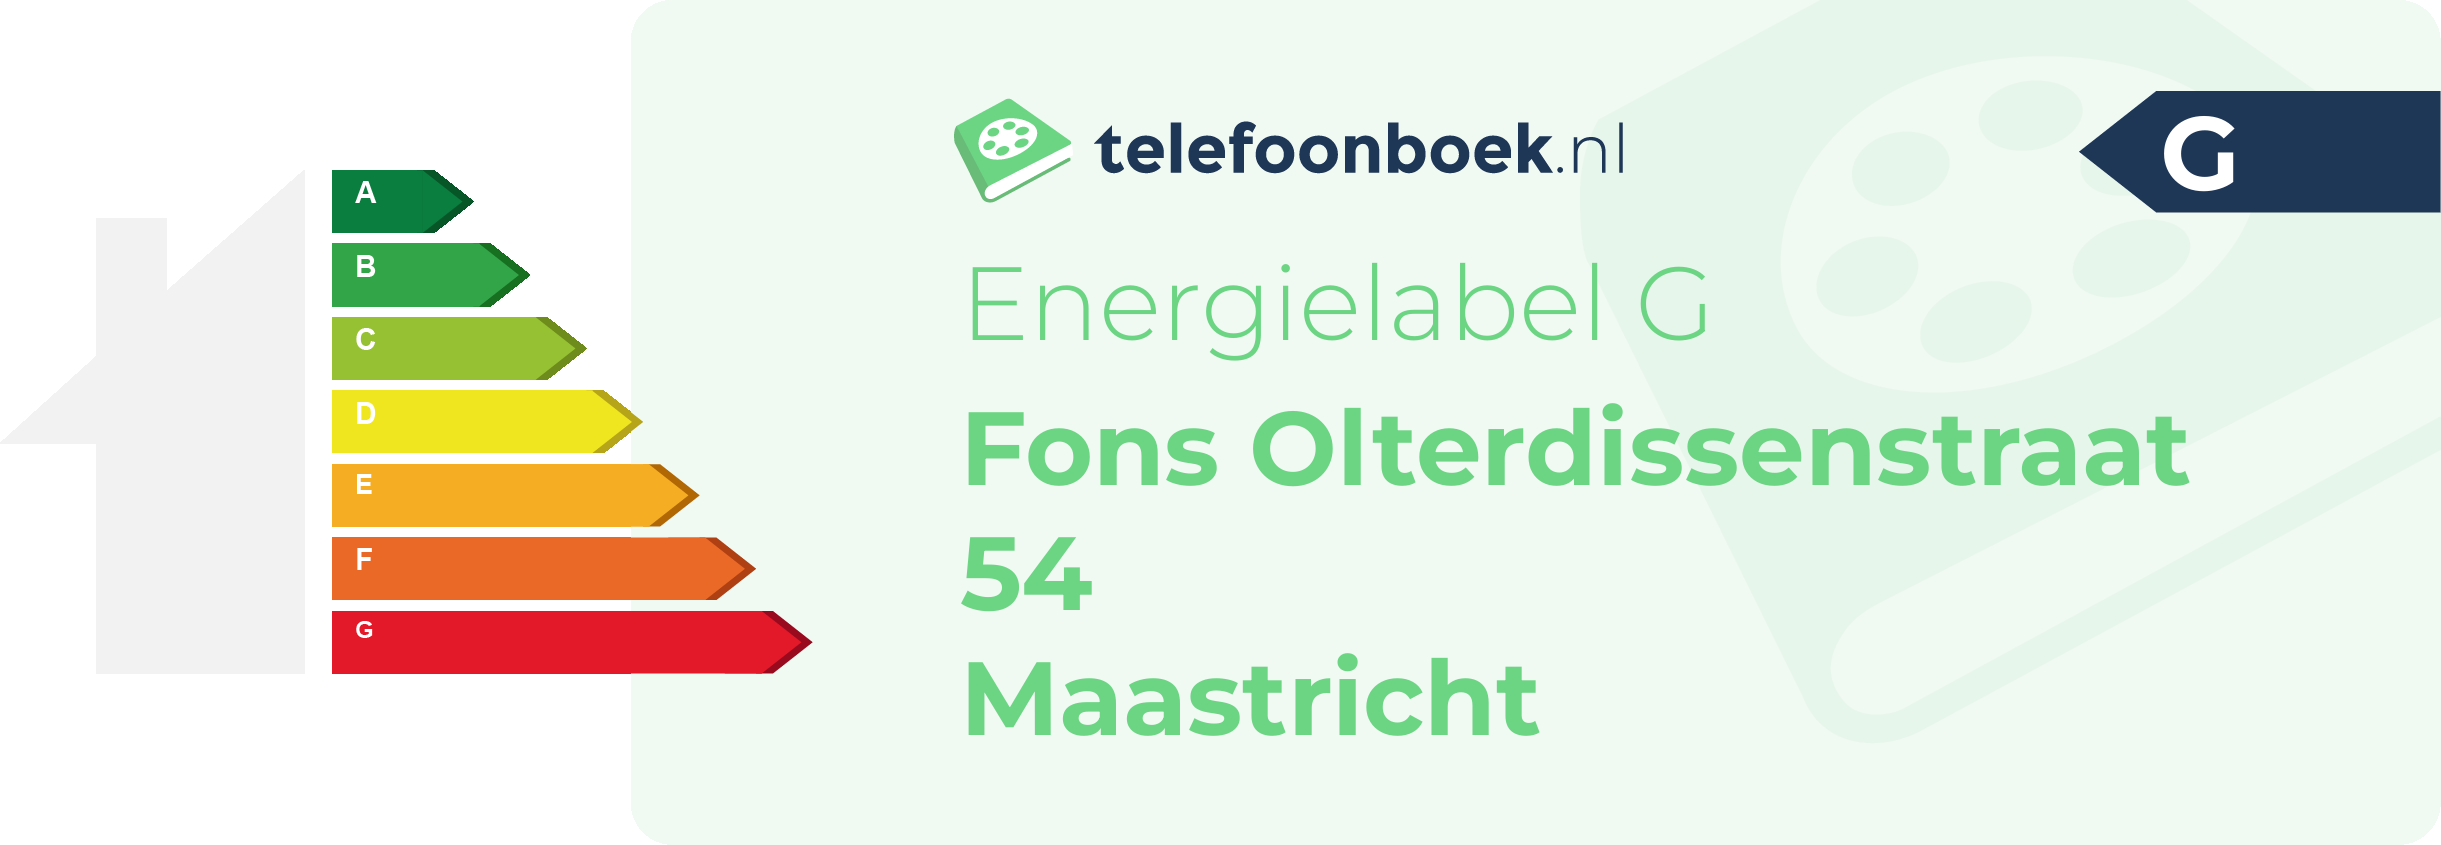 Energielabel Fons Olterdissenstraat 54 Maastricht